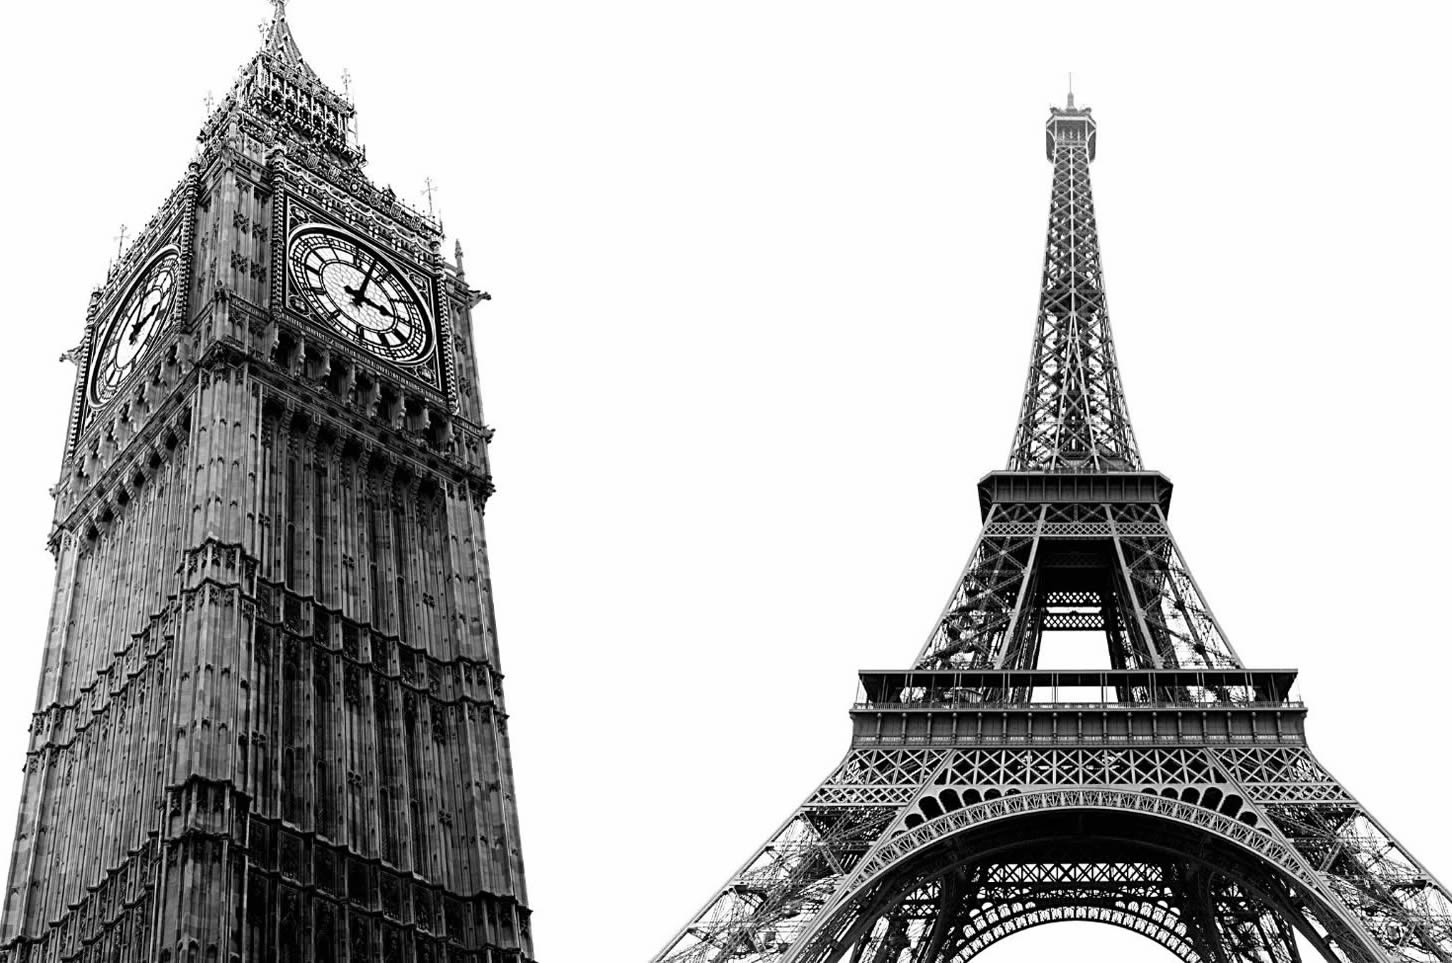 London to Paris